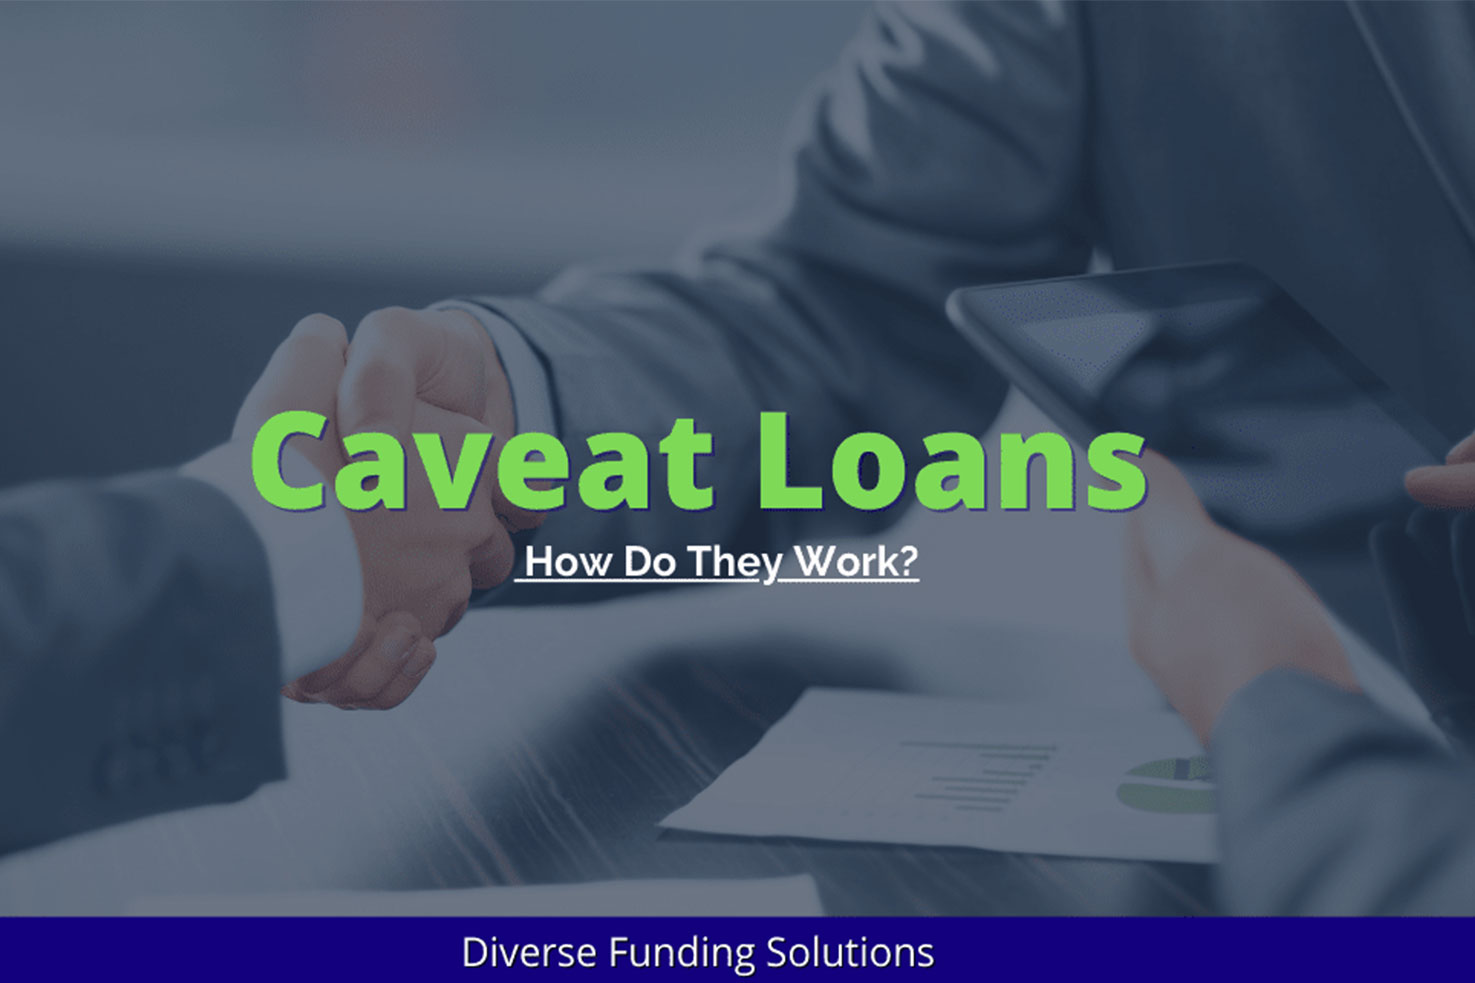 Caveat Loans